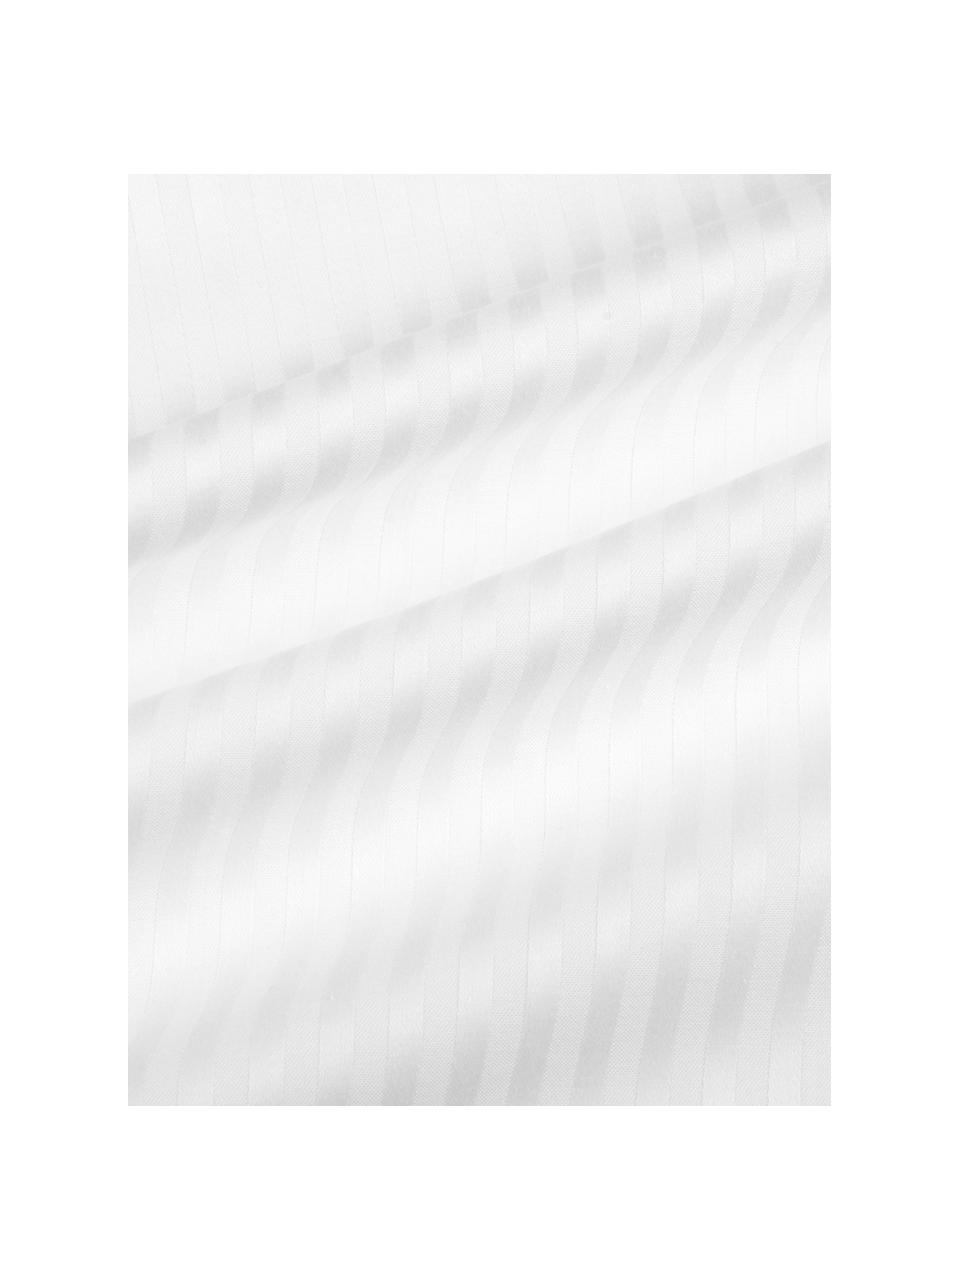 Satinstreifen-Kissenbezug Stella in Weiss, 50 x 70 cm, Webart: Satin Fadendichte 250 TC,, Weiss, B 50 x L 70 cm